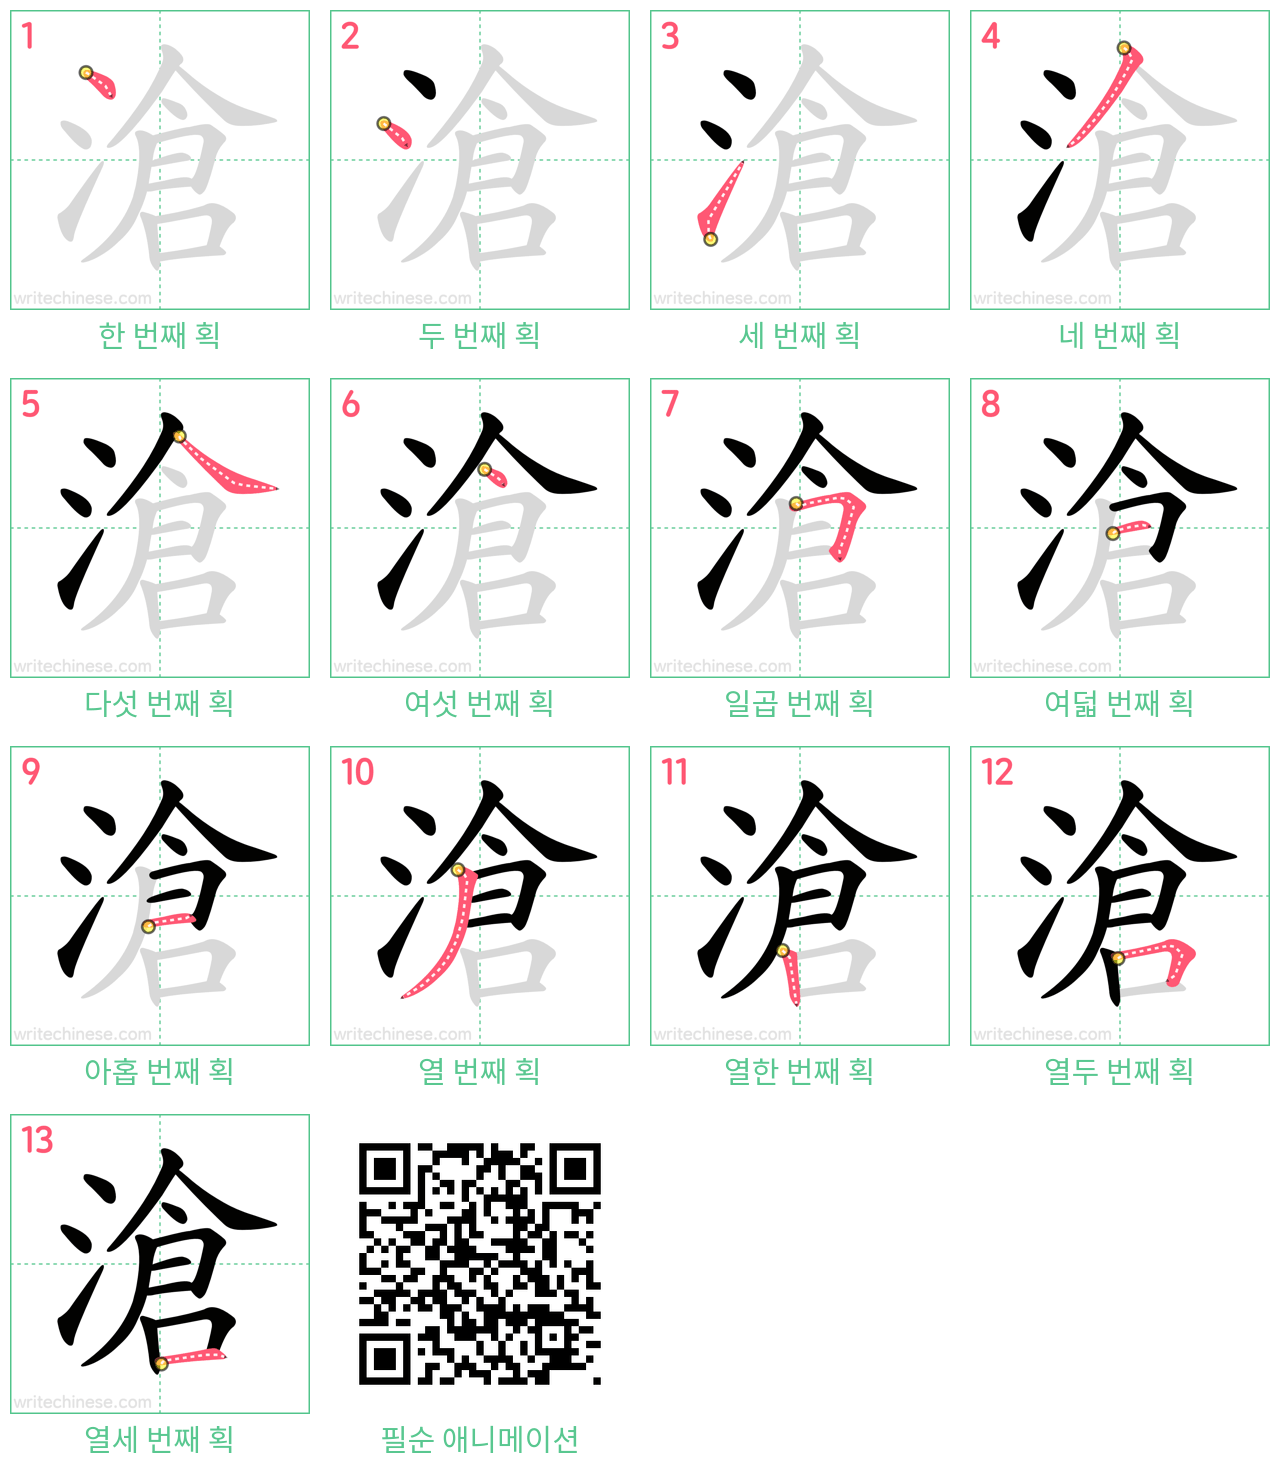 滄 step-by-step stroke order diagrams